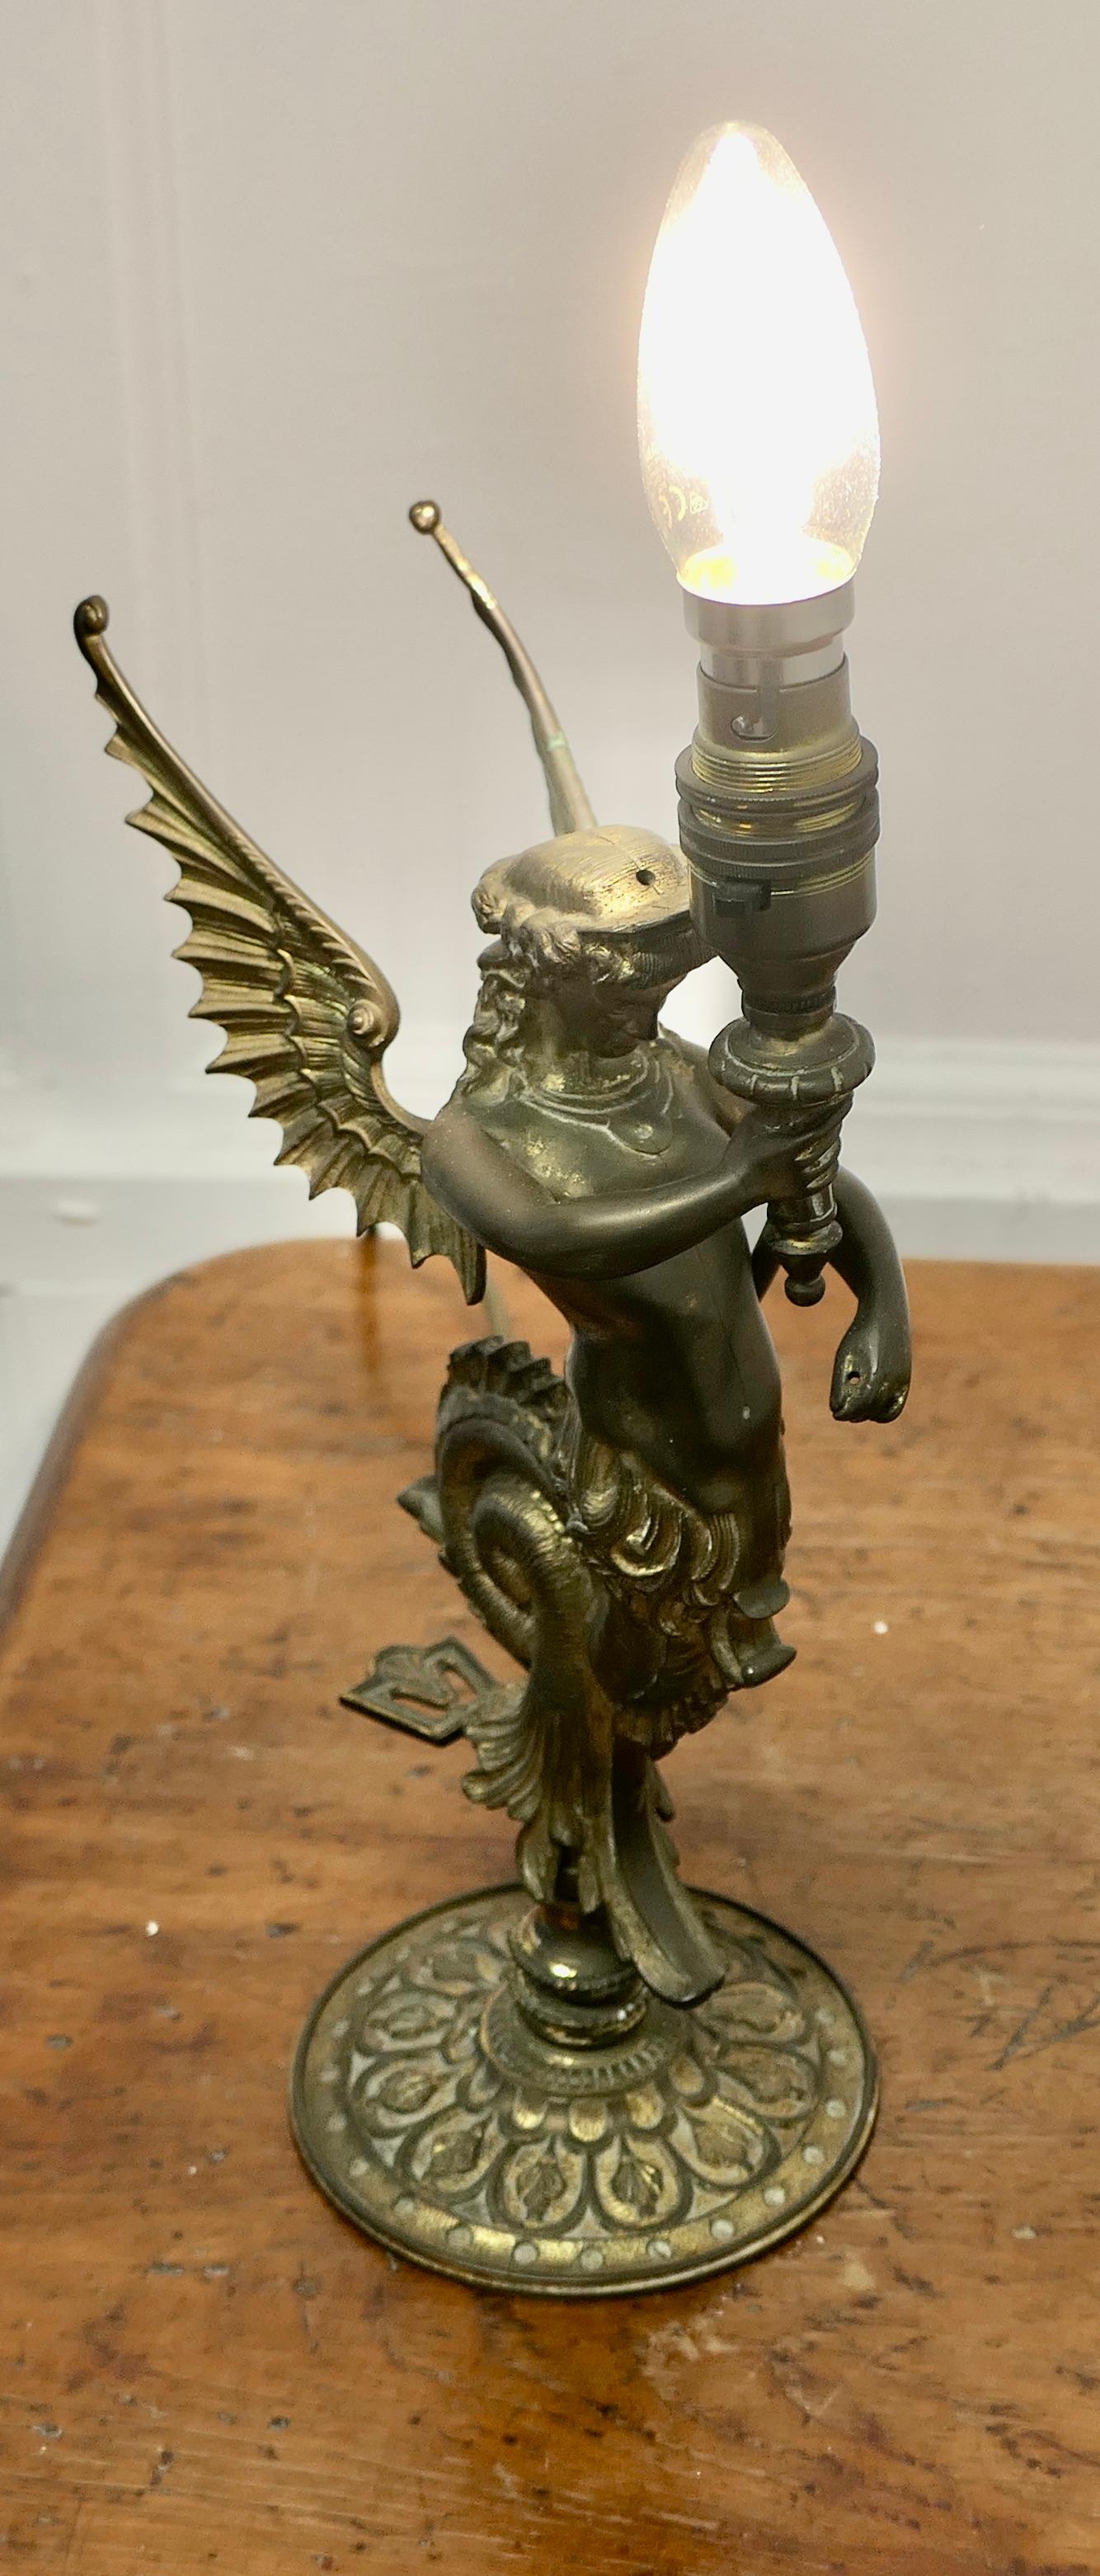 Lampe figurative en bronze Siren de style Empire  

Charmante lampe en bronze, la lampe a été convertie d'une lampe à gaz a une statue d'une Sirenes sur la plaque arrière de l'applique.
La lampe fonctionne parfaitement et le câblage est neuf.
La